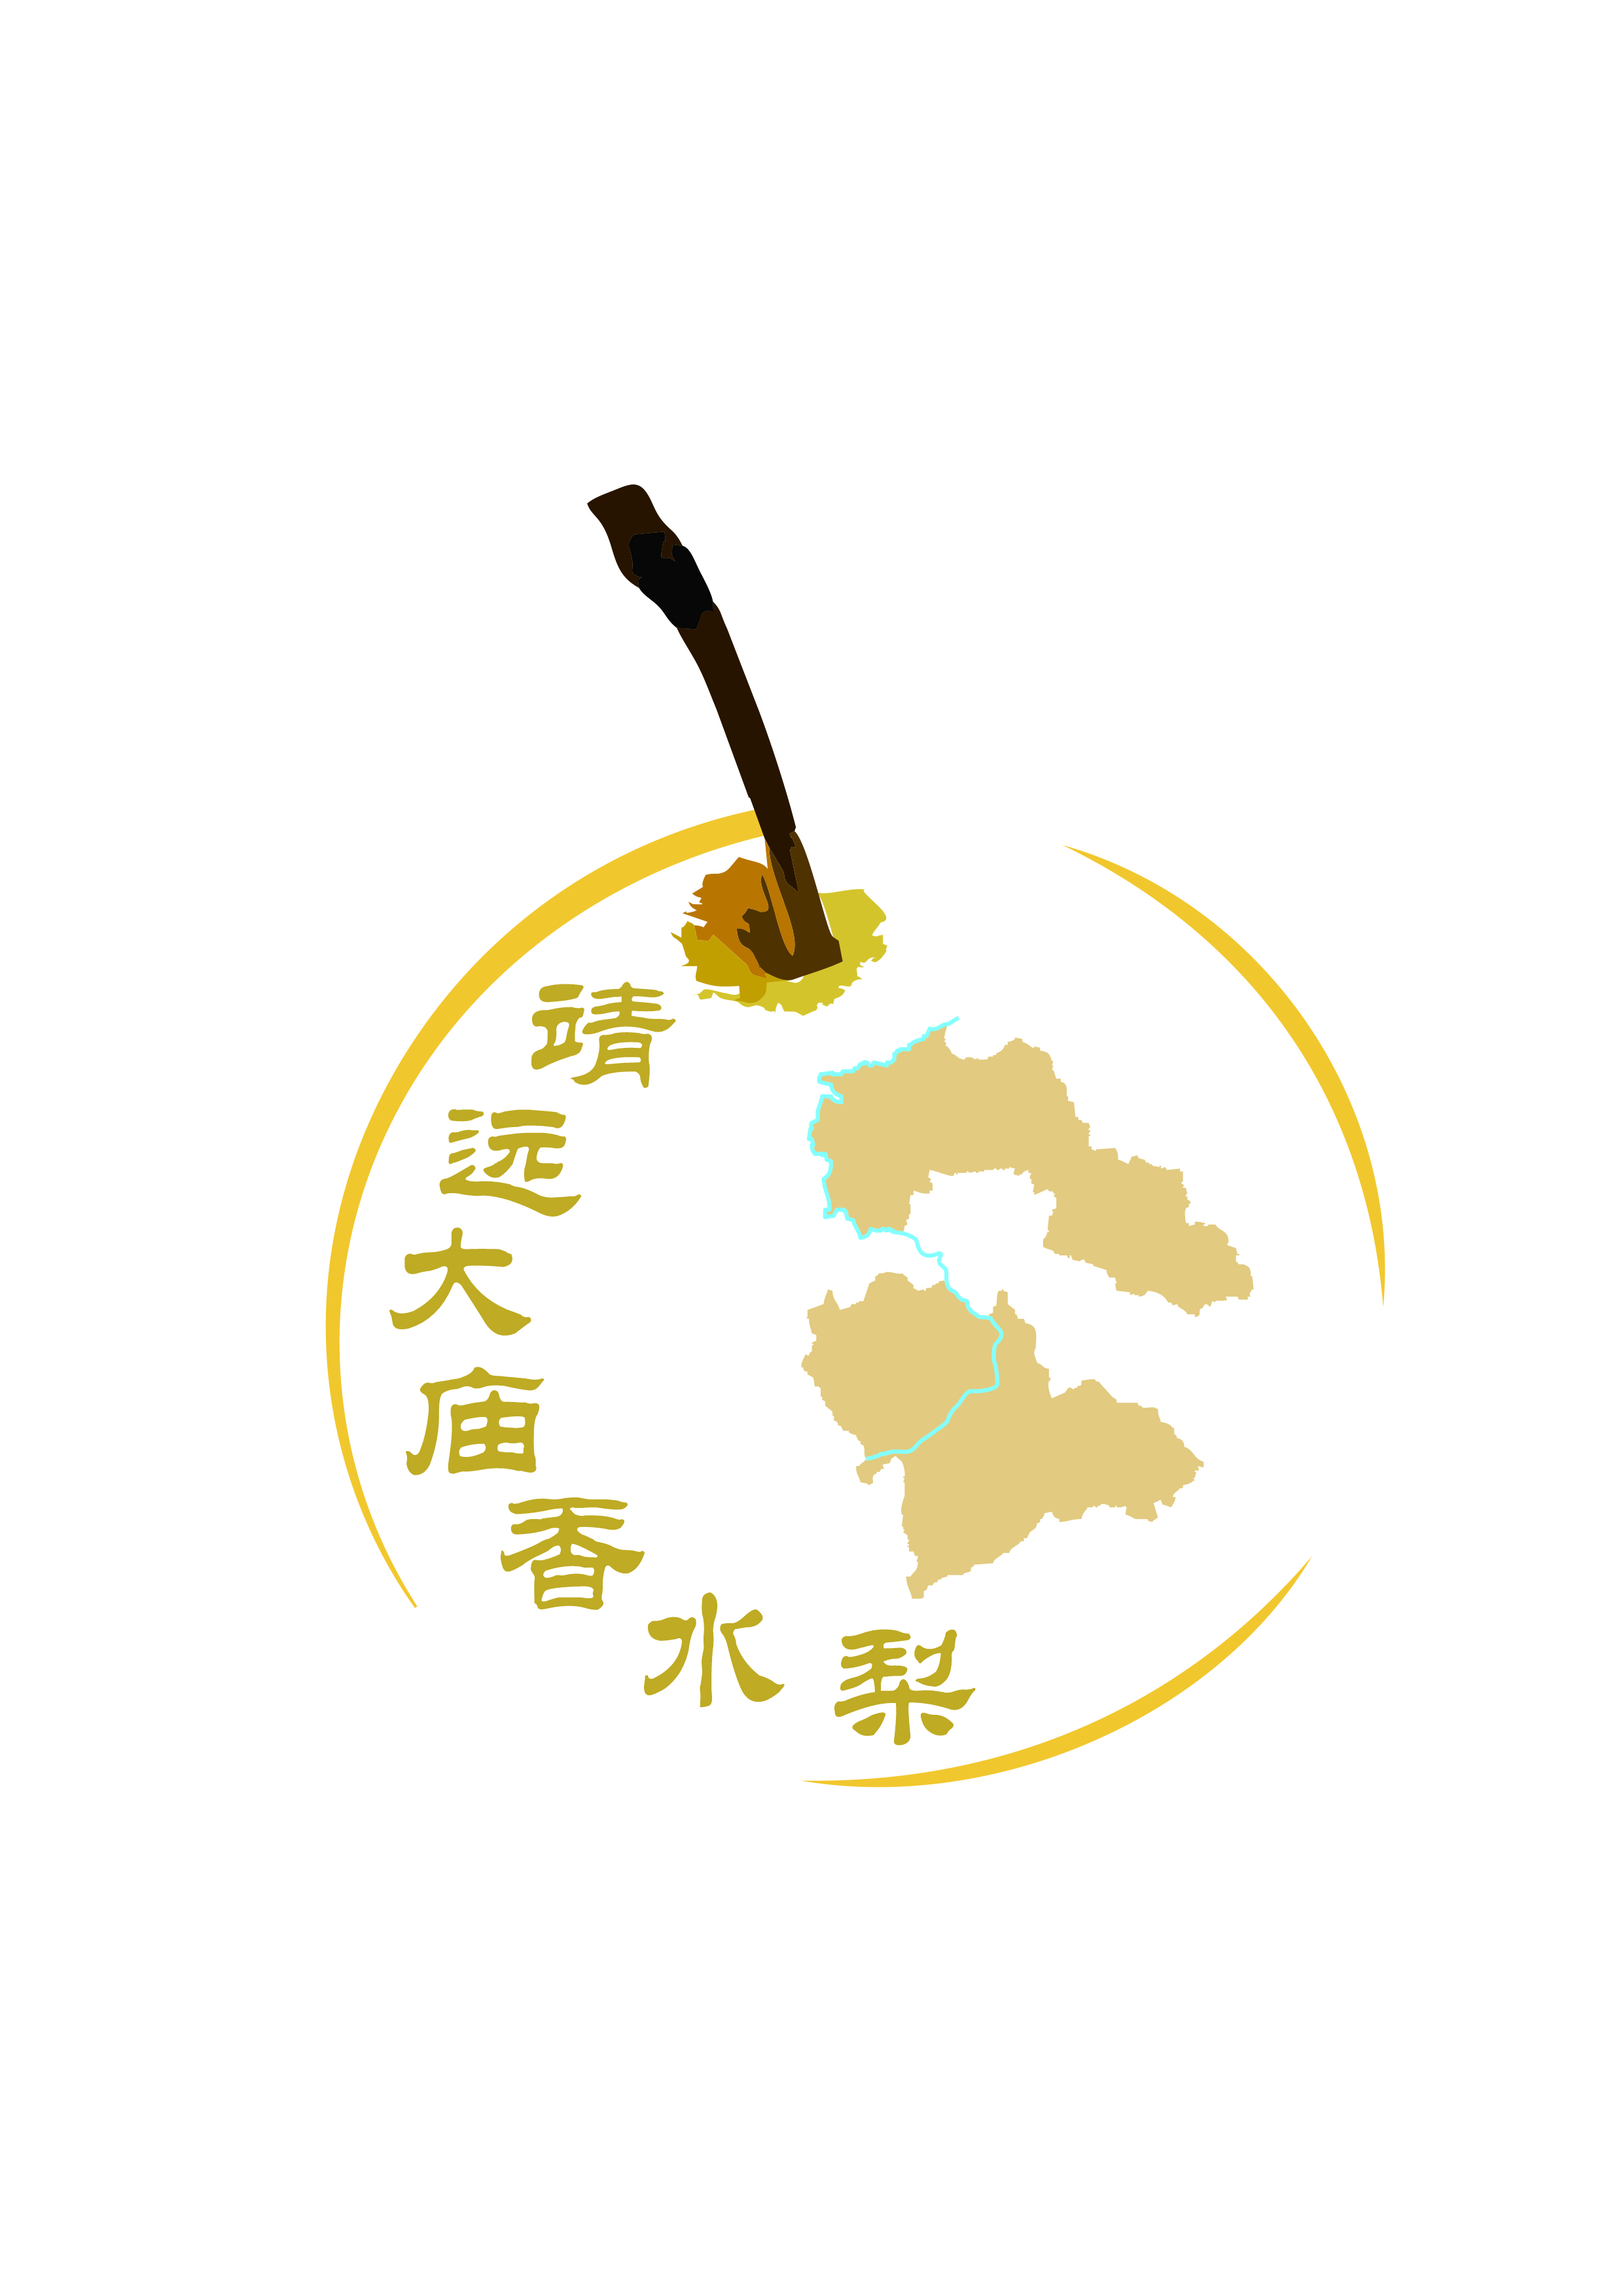 靖远大庙香水梨-logo.jpg